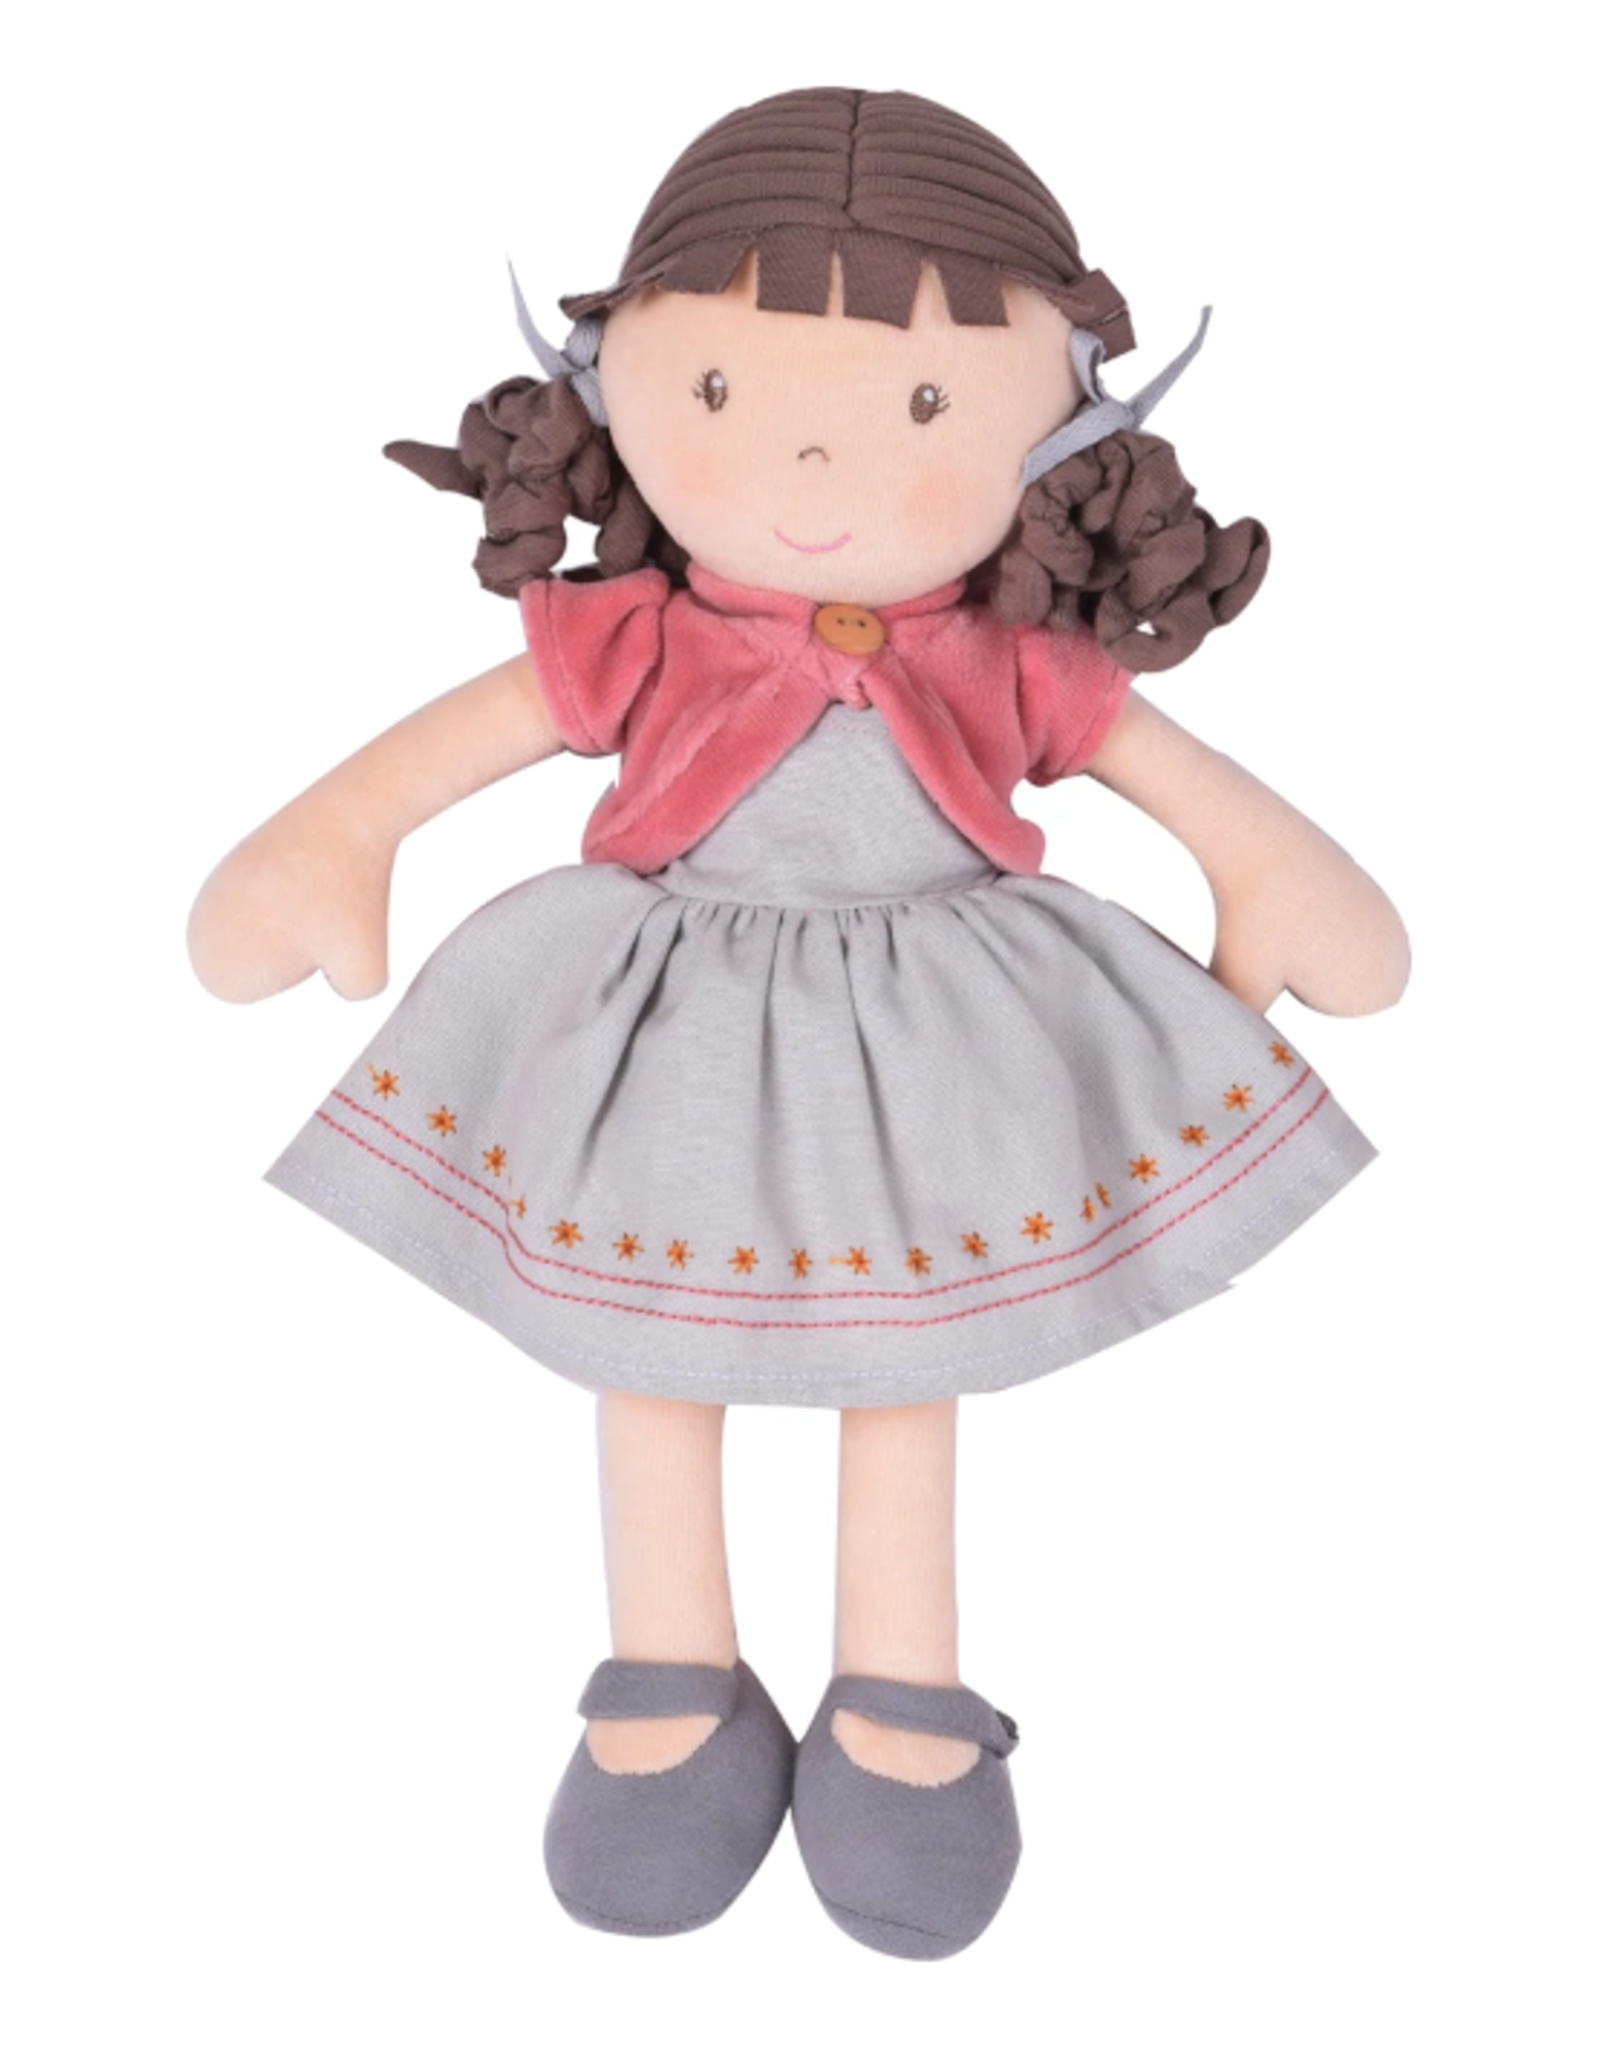 Tikiri Toys Tikiri Toys - Bonikka - Rose - Organic Doll With Brown Hair